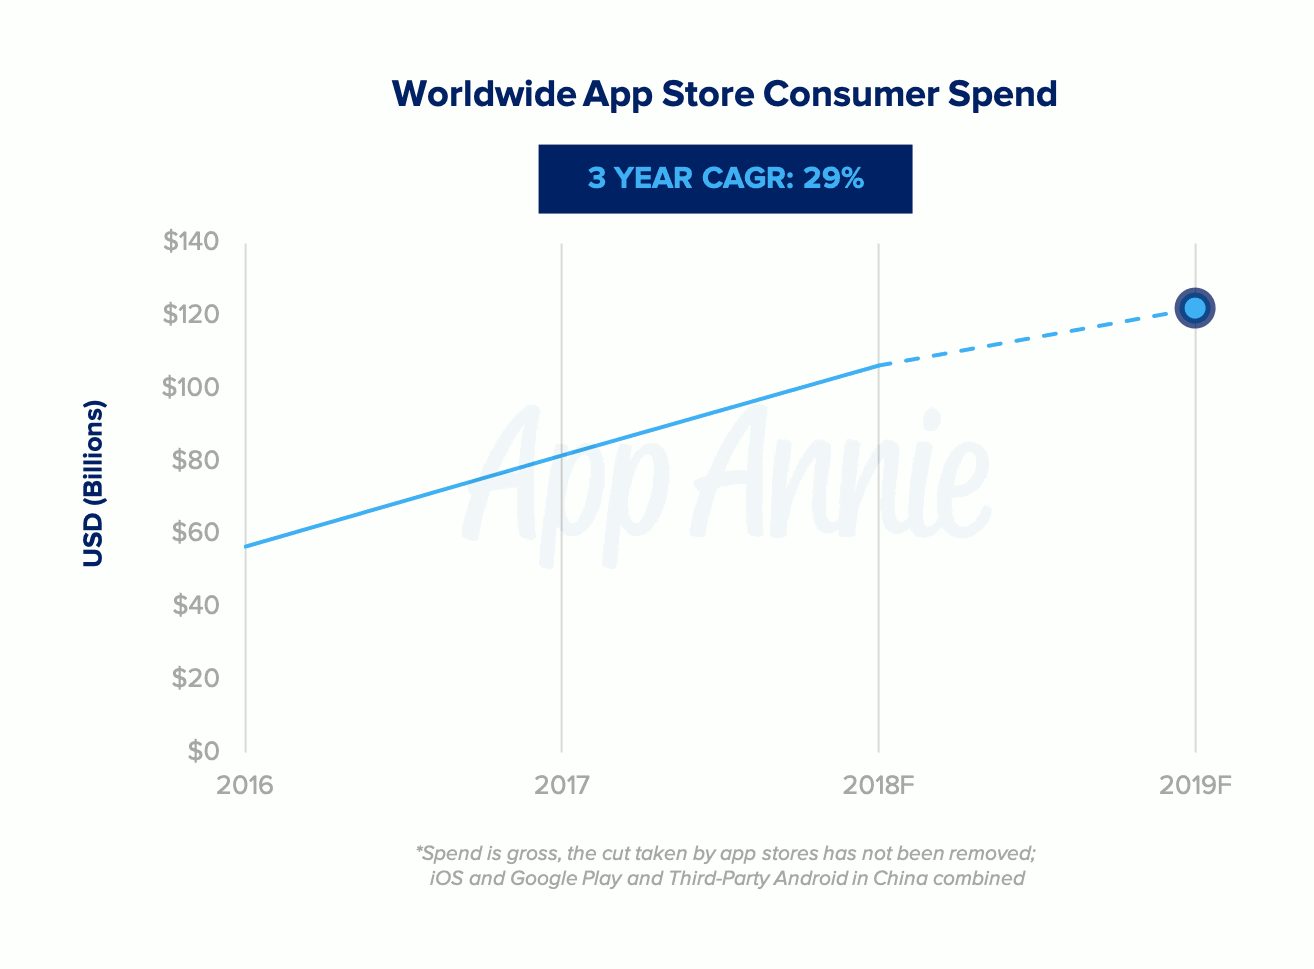 Les dépenses consommateurs de l'App Store